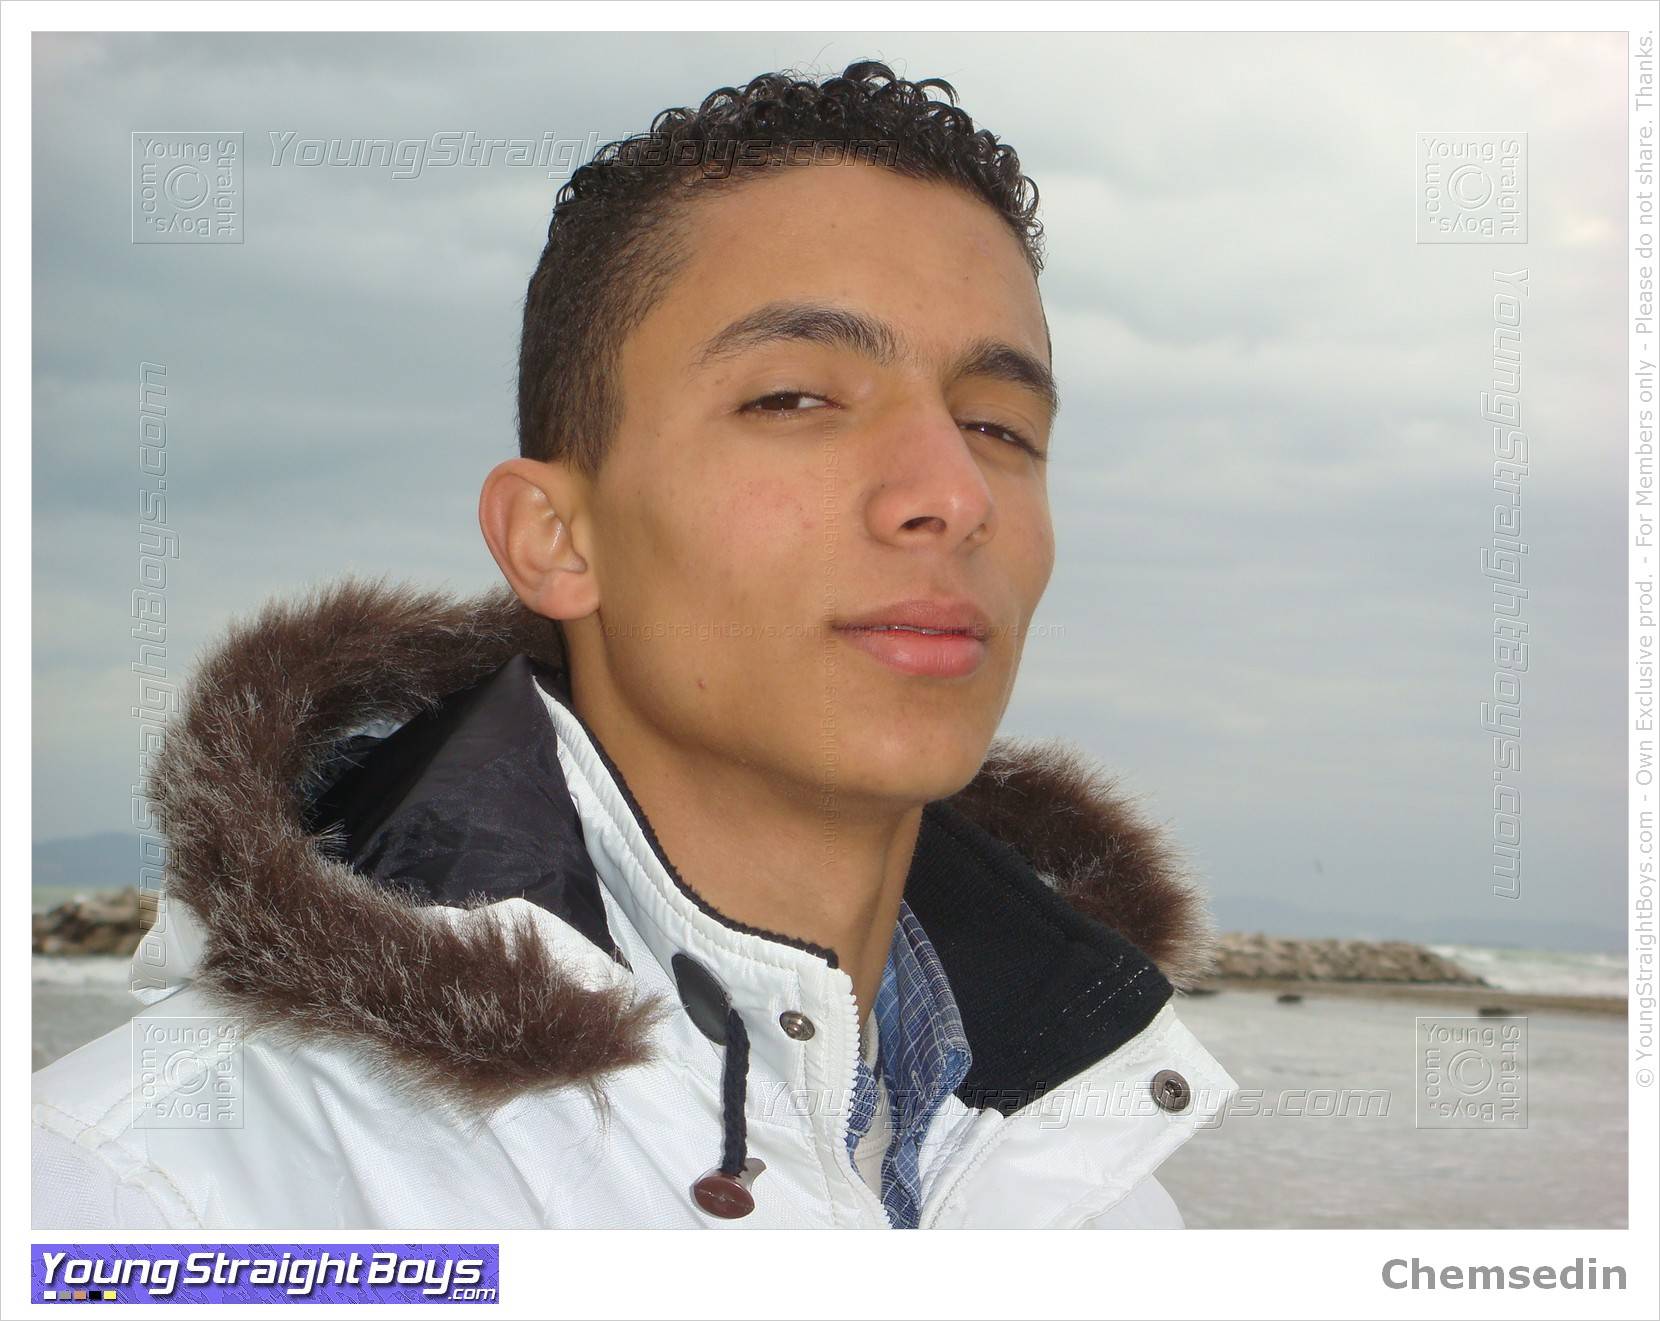 חמסדין בחוף הים, ילד ערבי צעיר וחתיך שהייתי יכול למצוץ :-)